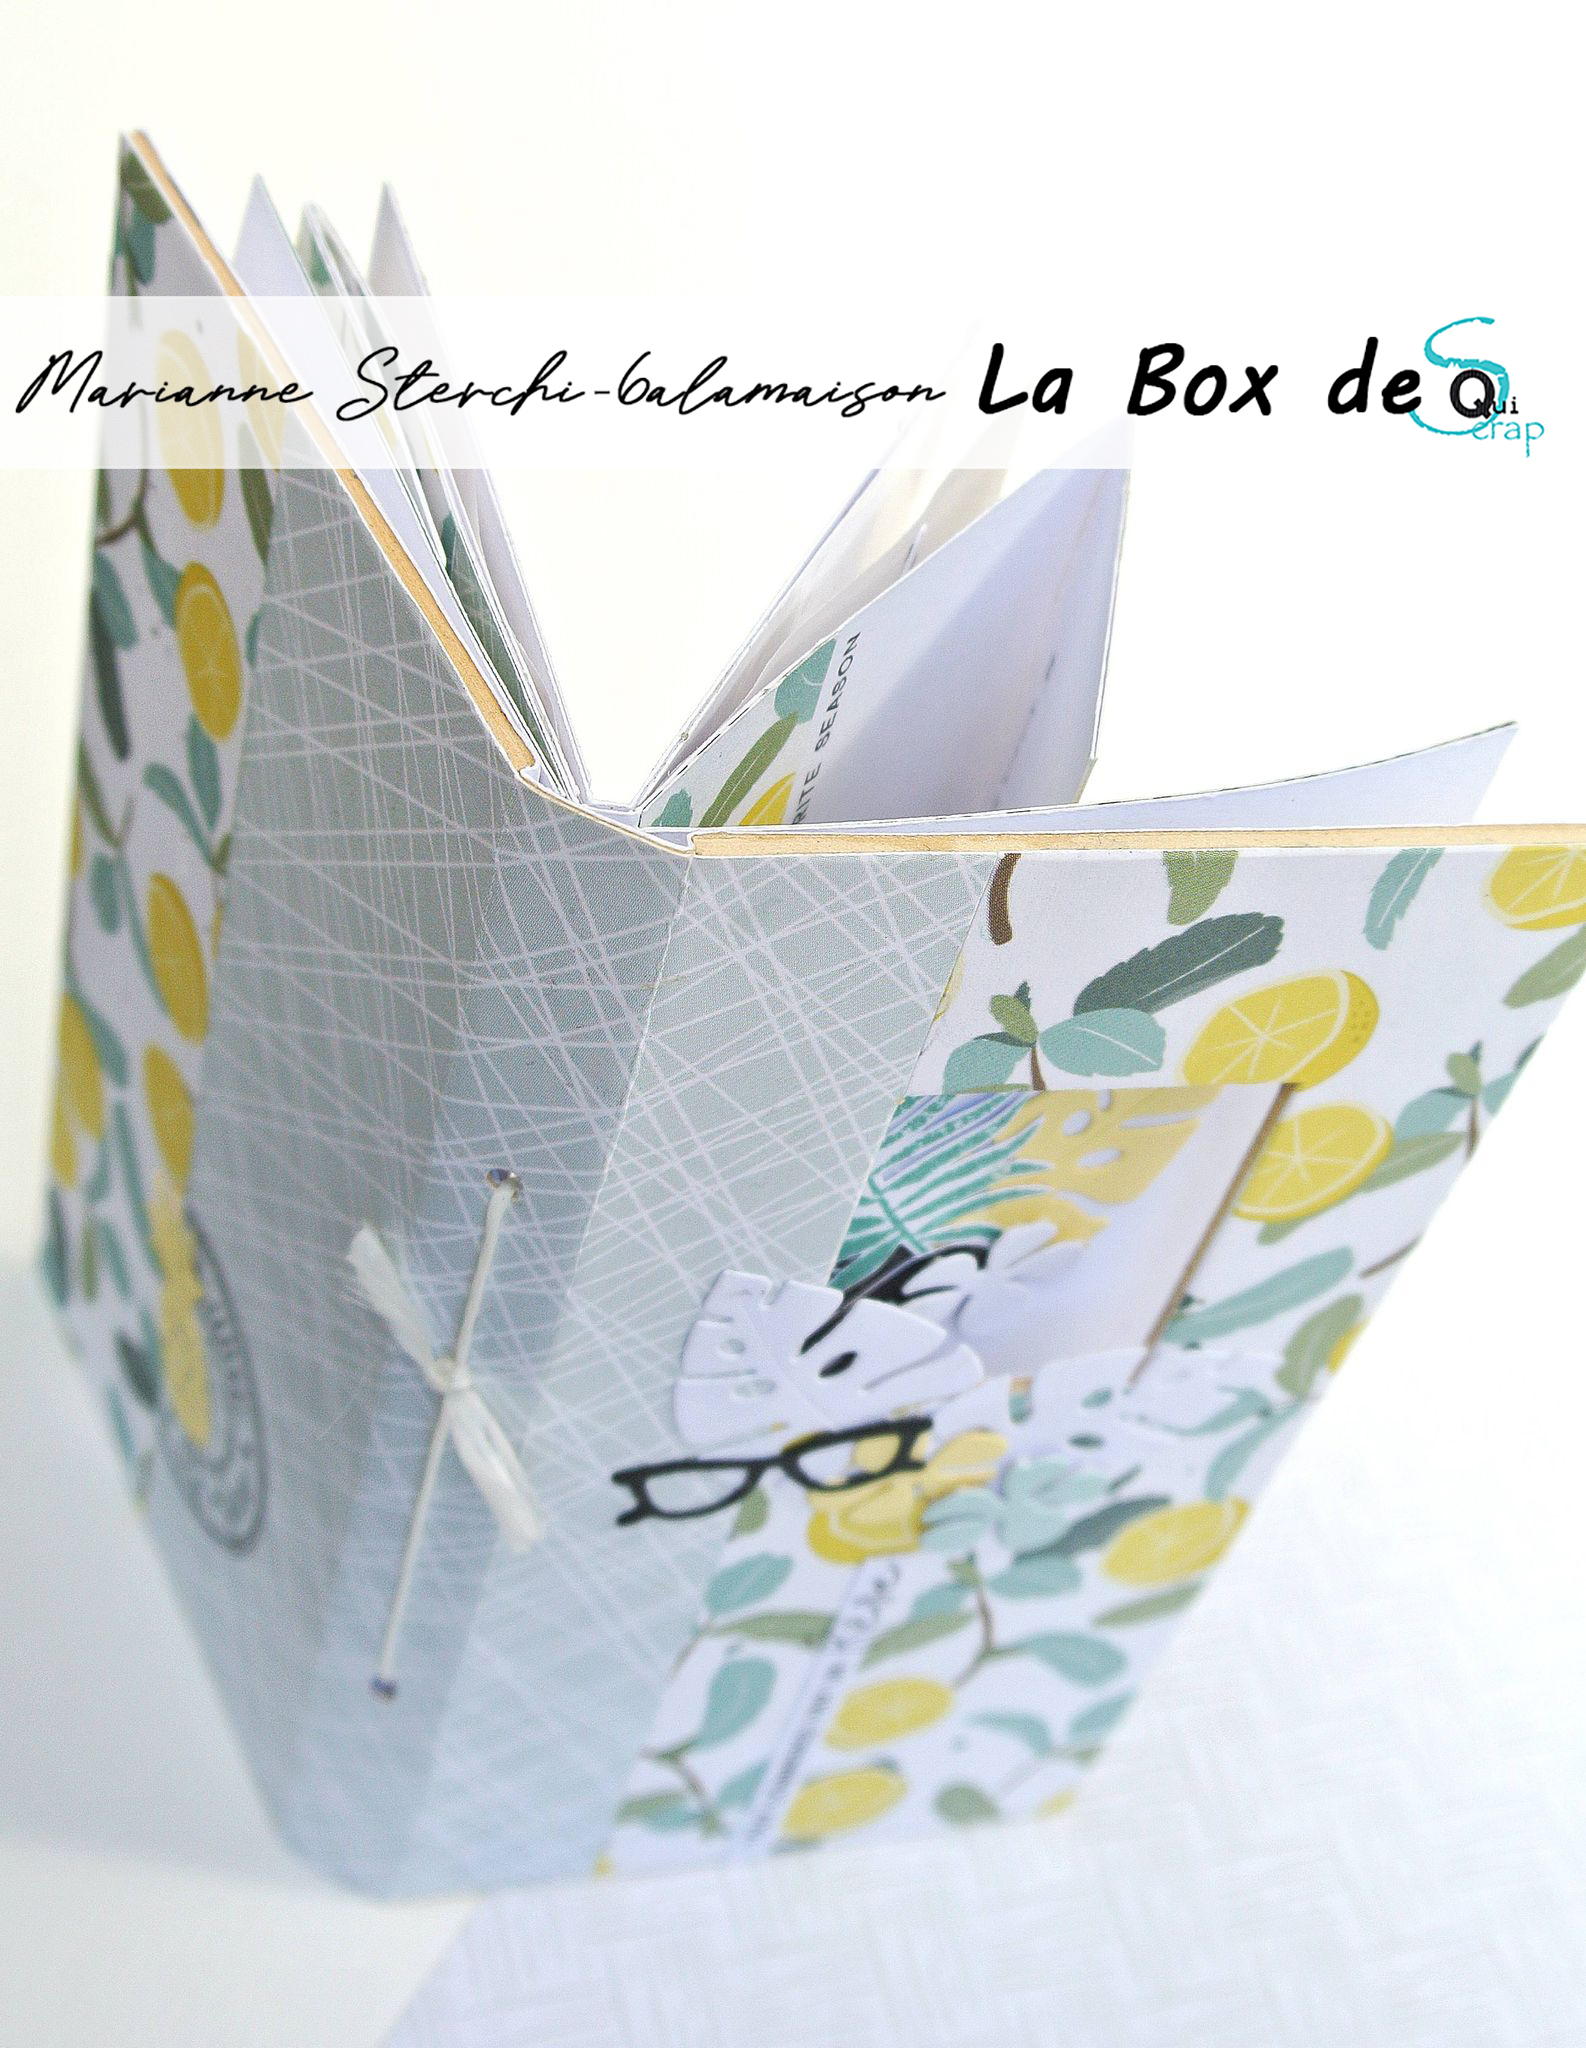 You are currently viewing Tuto n°2 pour la Box d’Aout 2021 par Marianne Sterchi – 6alamaison: Le minialbum